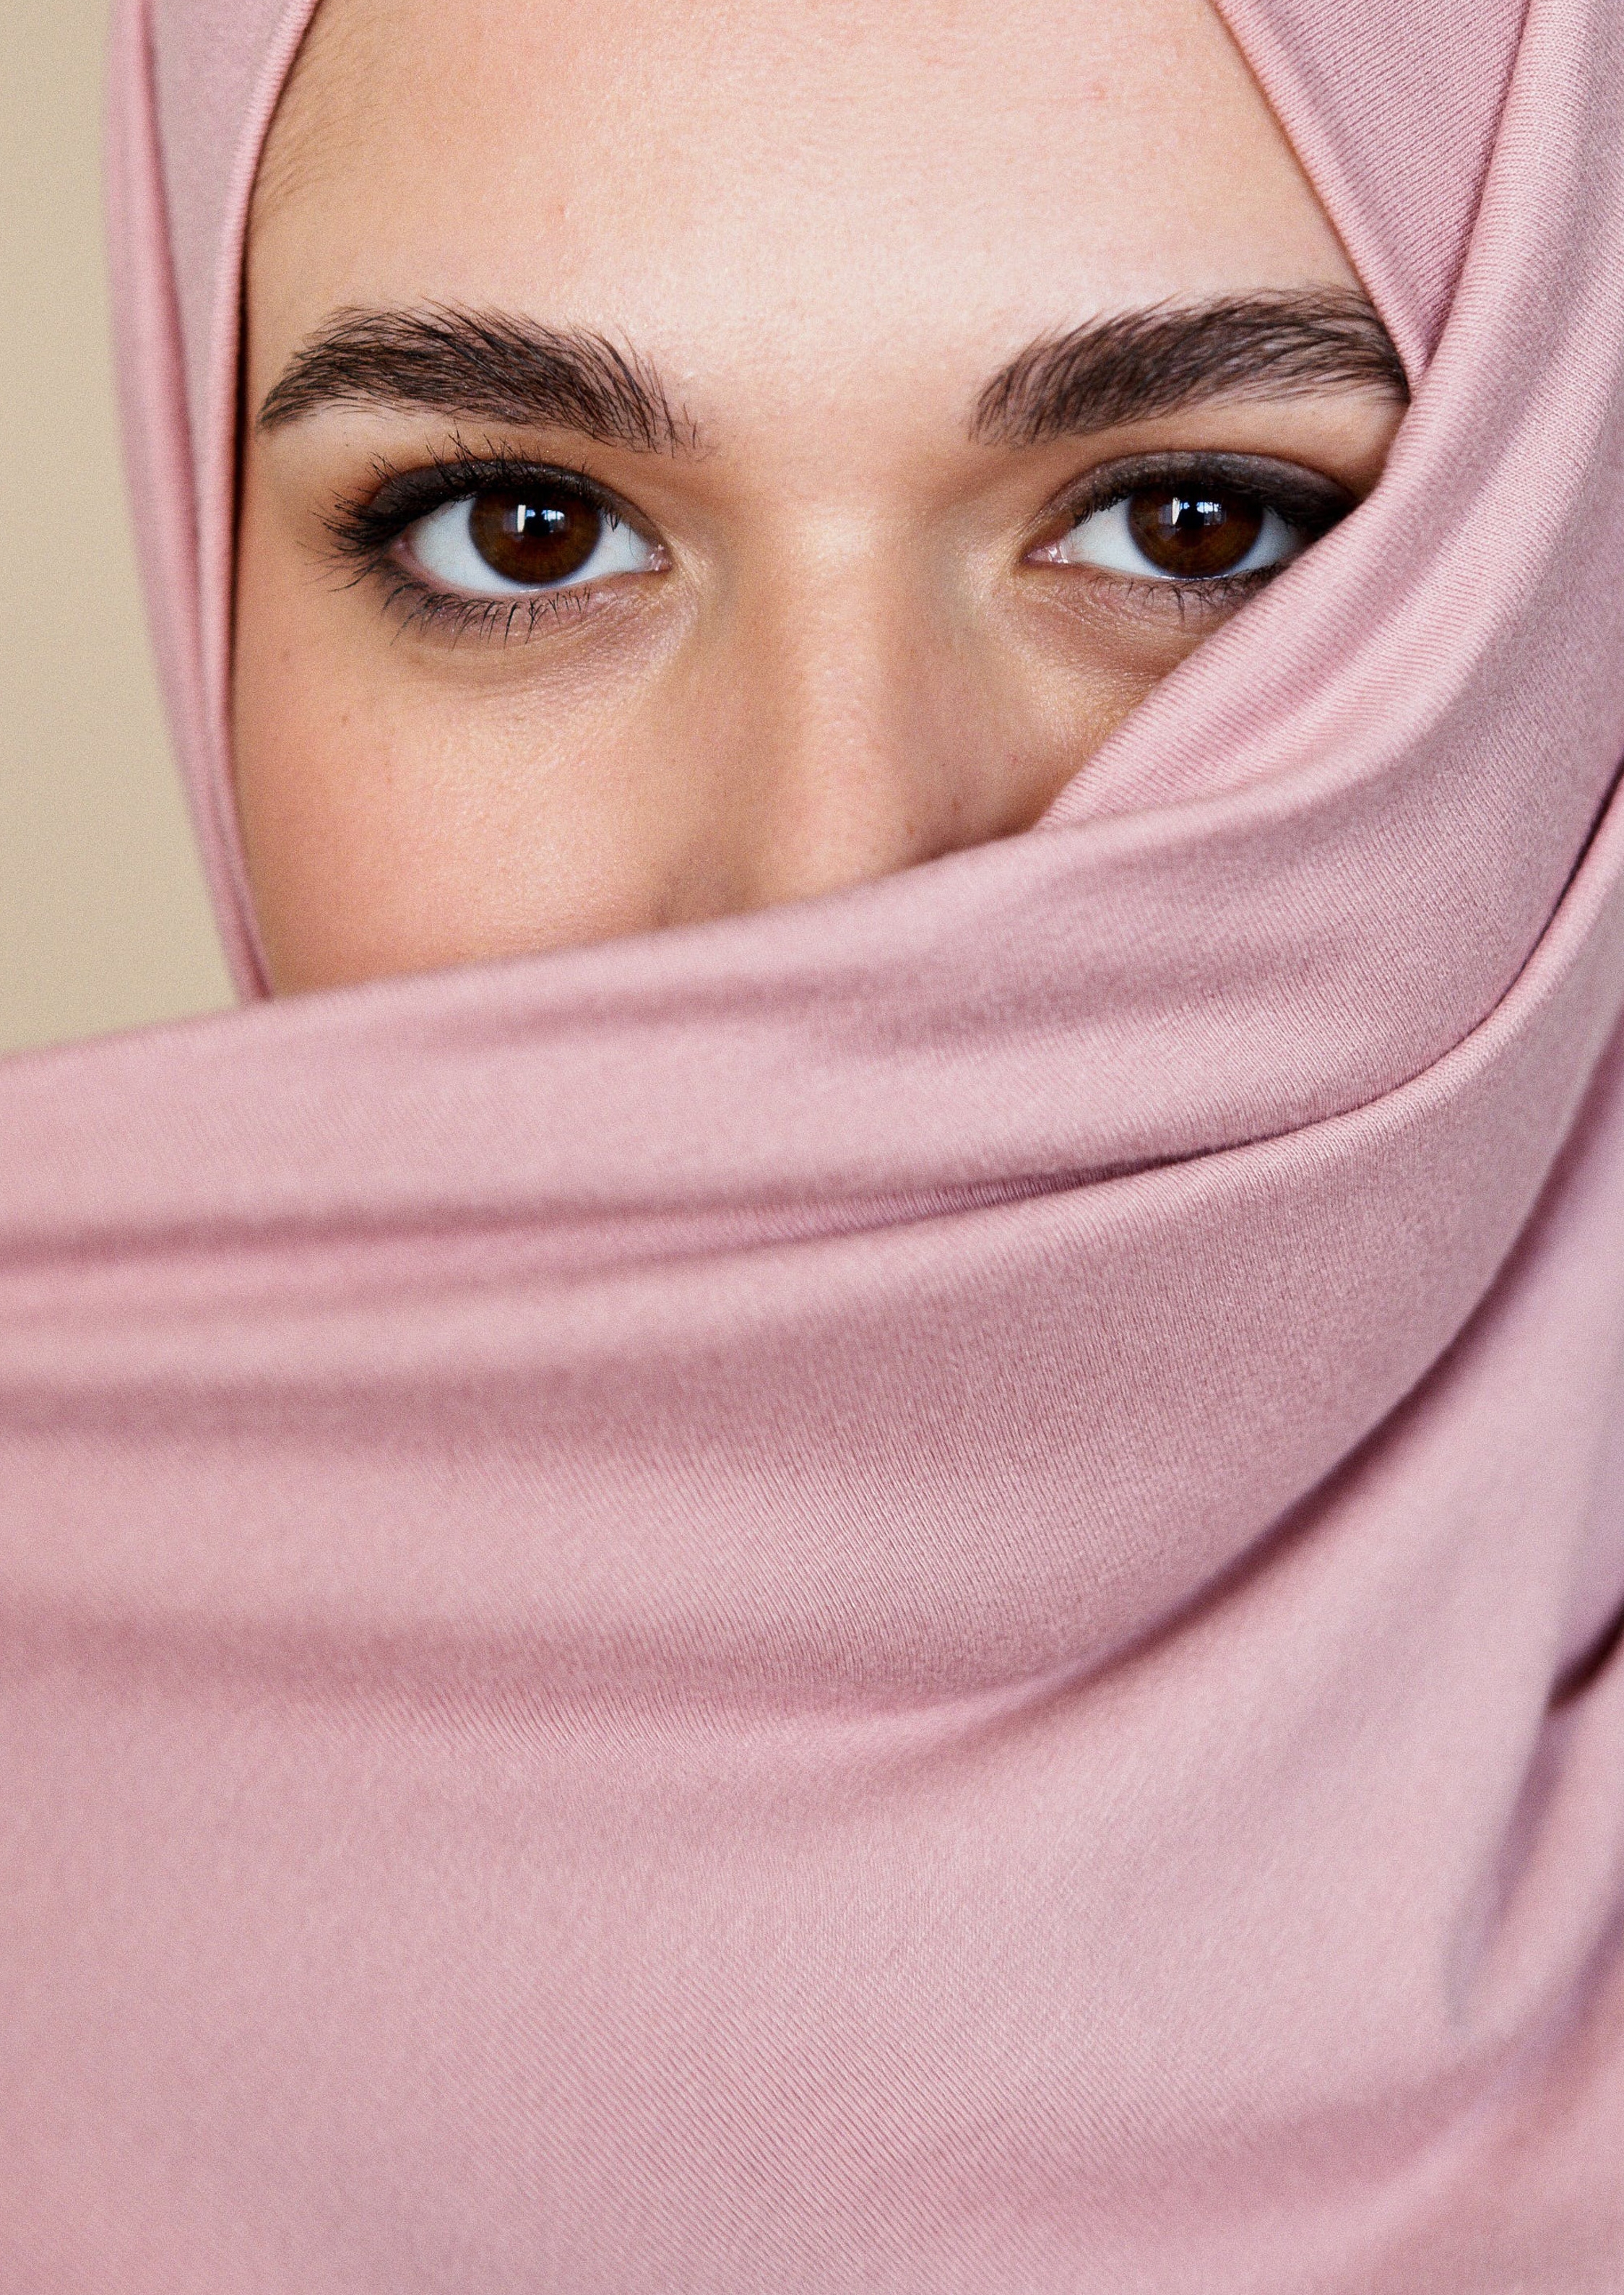 Frau, deren Gesicht halb von einem rosa Hijab verdeckt ist